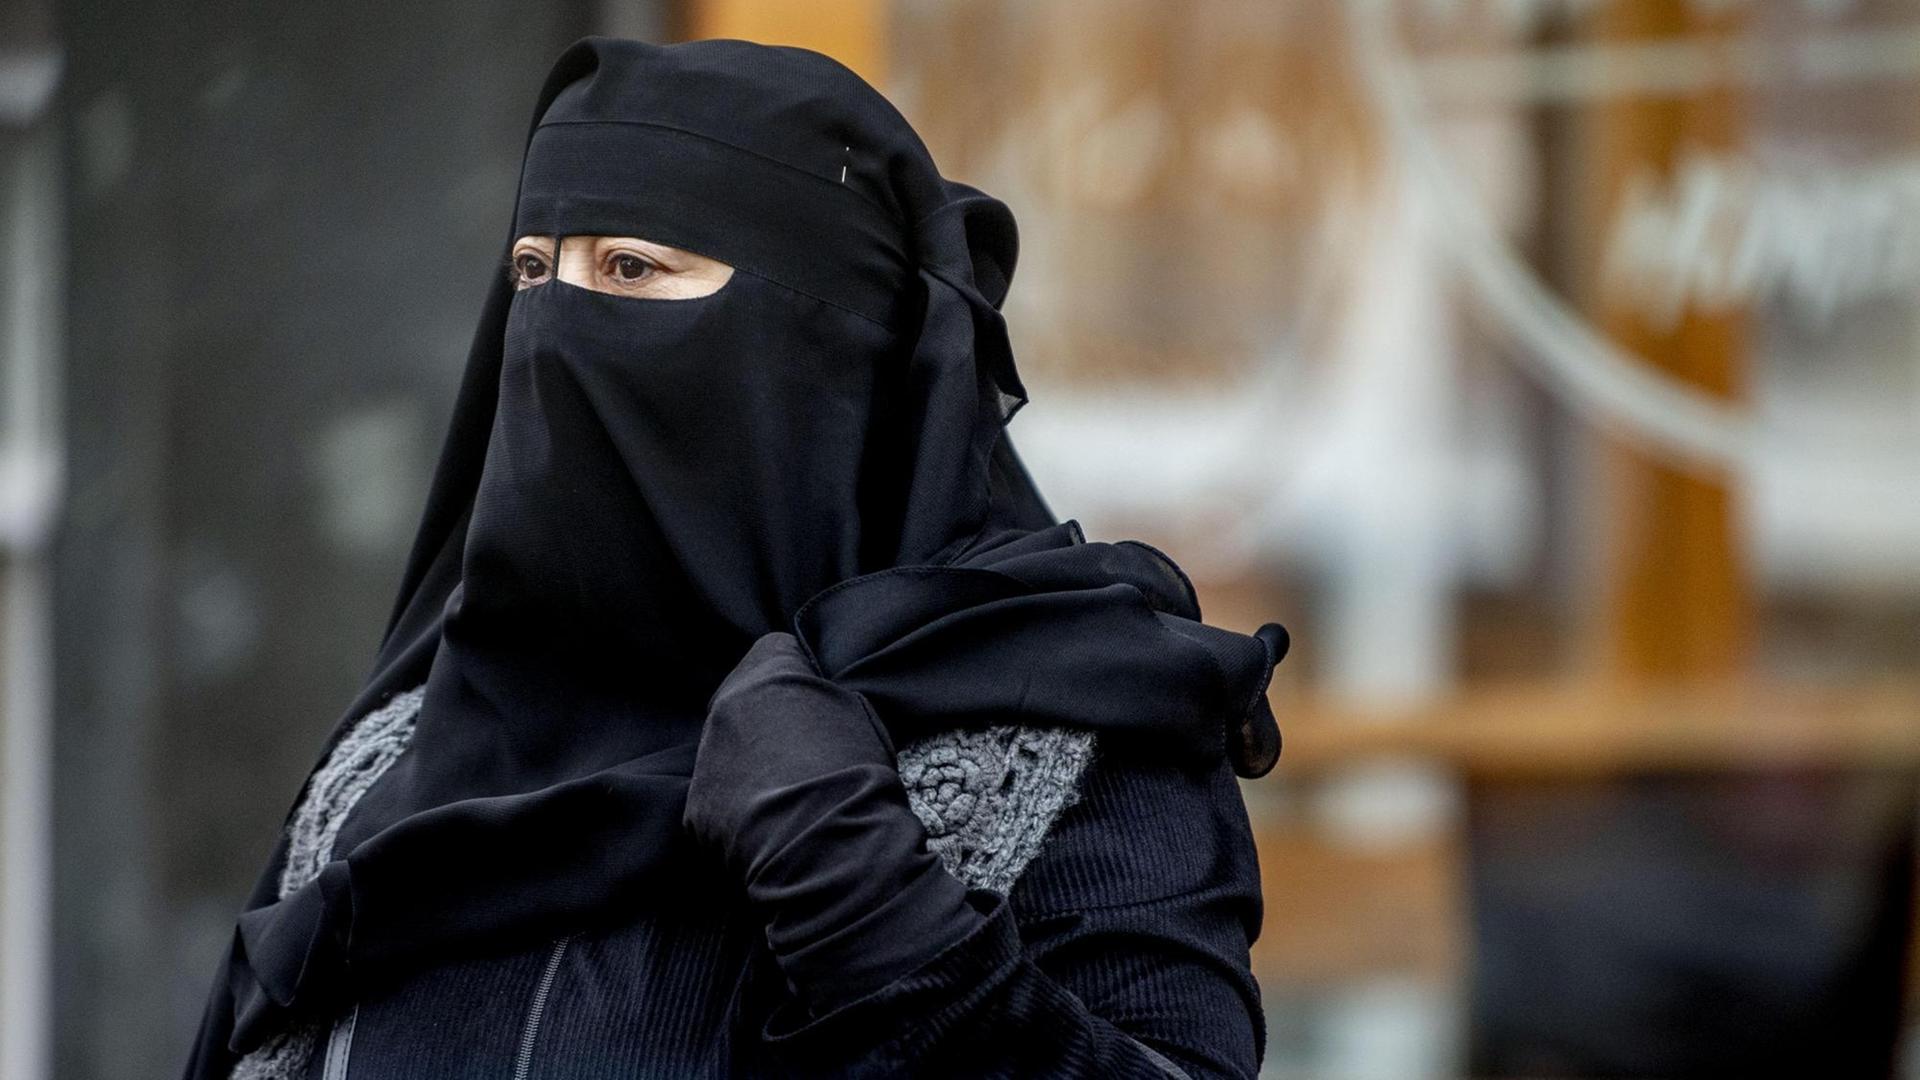 Zu sehen ist eine Muslima, deren Kopf bis auf die Augen mit einem schwarzen Tuch verhüllt ist. 